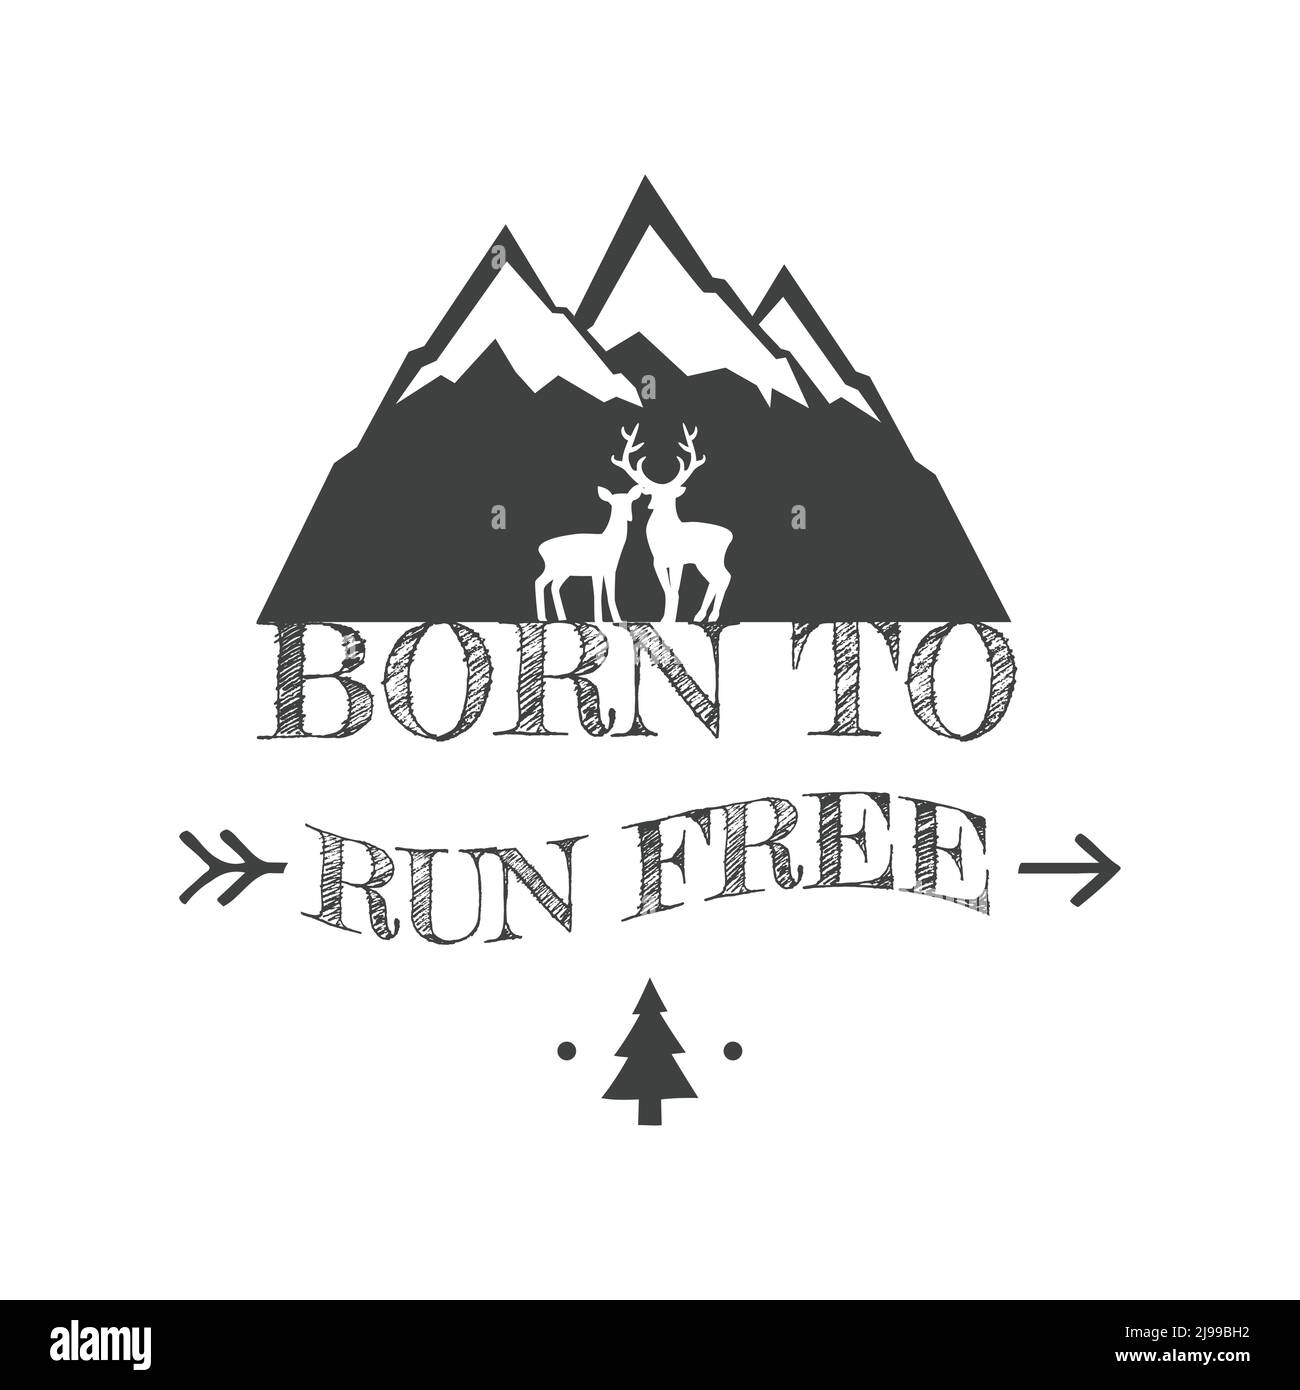 Nato per correre libero con illustrazione delle colline di montagna. Caratteri slogan escursionistici per gli amanti delle attività all'aperto. Illustrazione Vettoriale